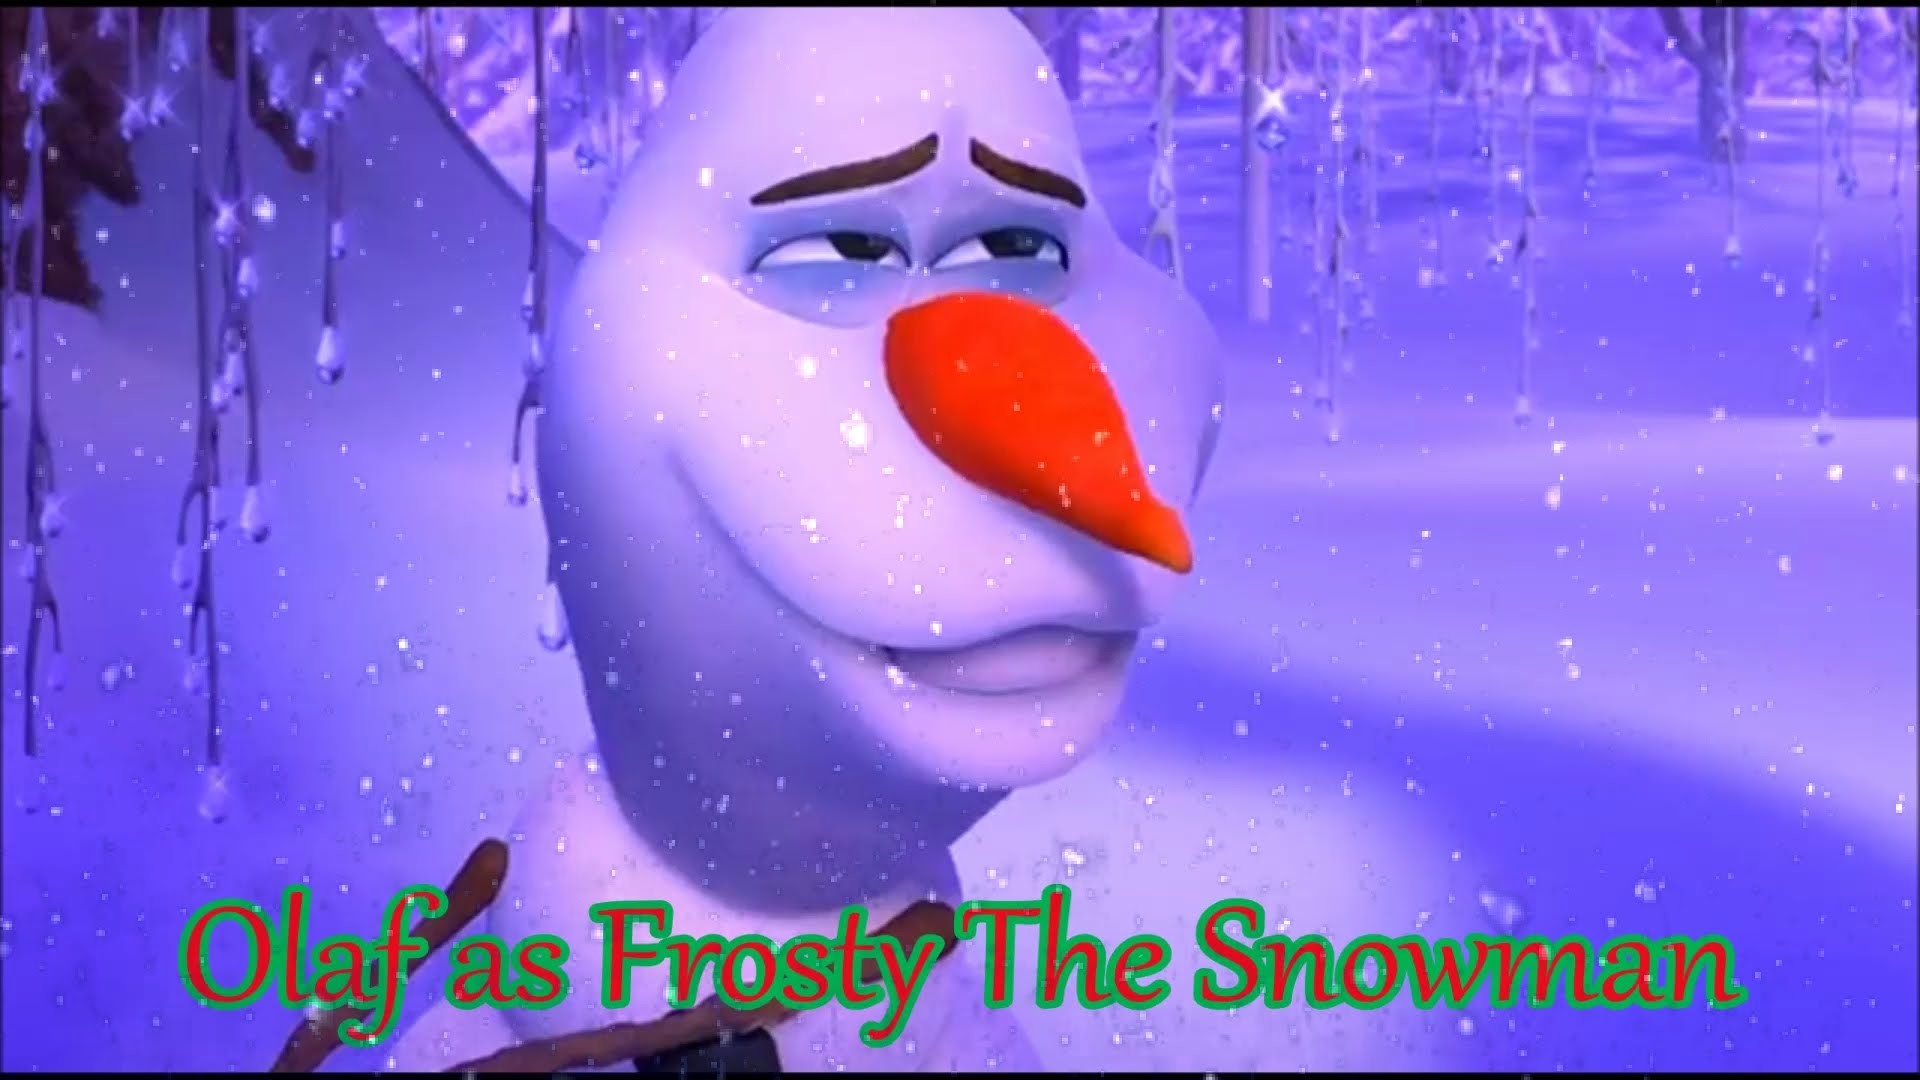 1920x1080 "Olaf The Snowman" Cast Video - YouTube